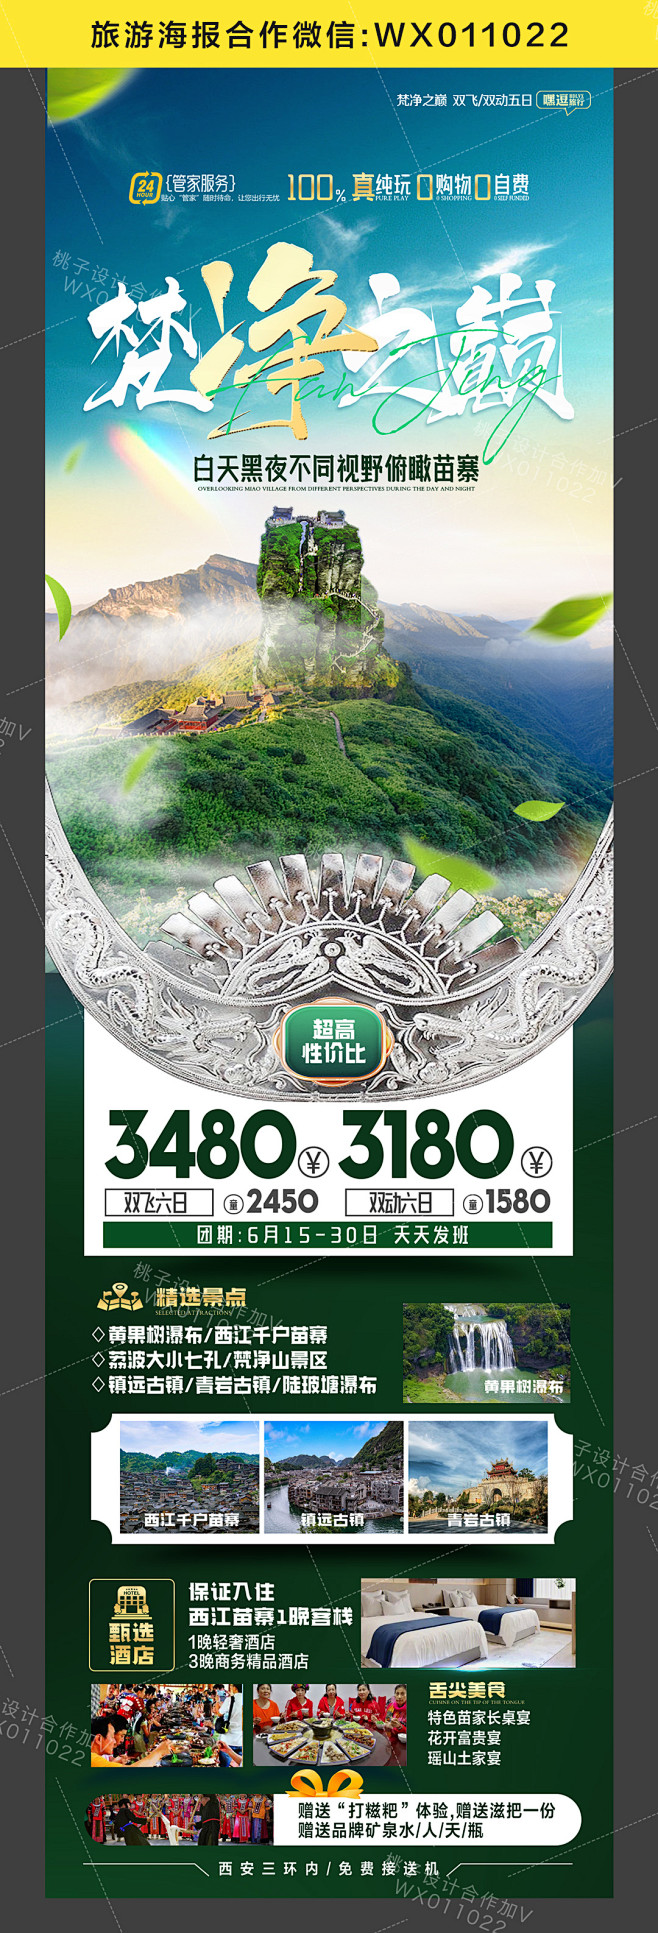 贵州旅游海报合作购买加v:wx01102...